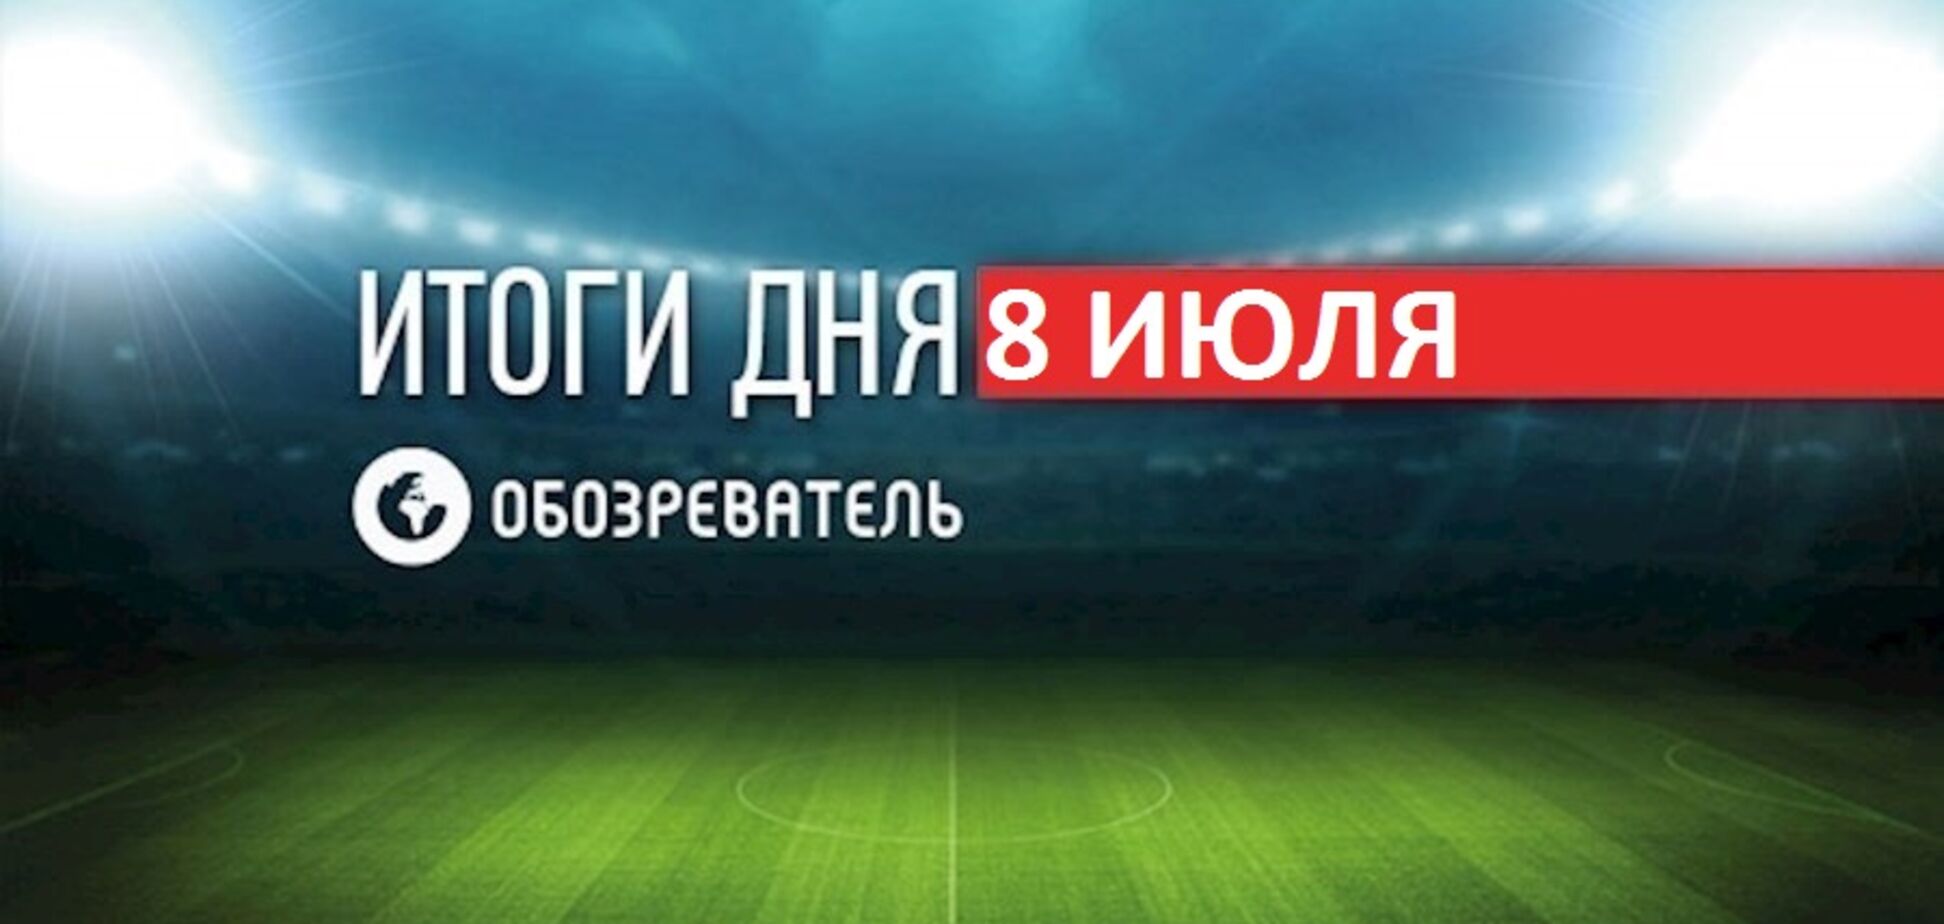 ФИФА из-за Украины наказала Виду: спортивные итоги 8 июля